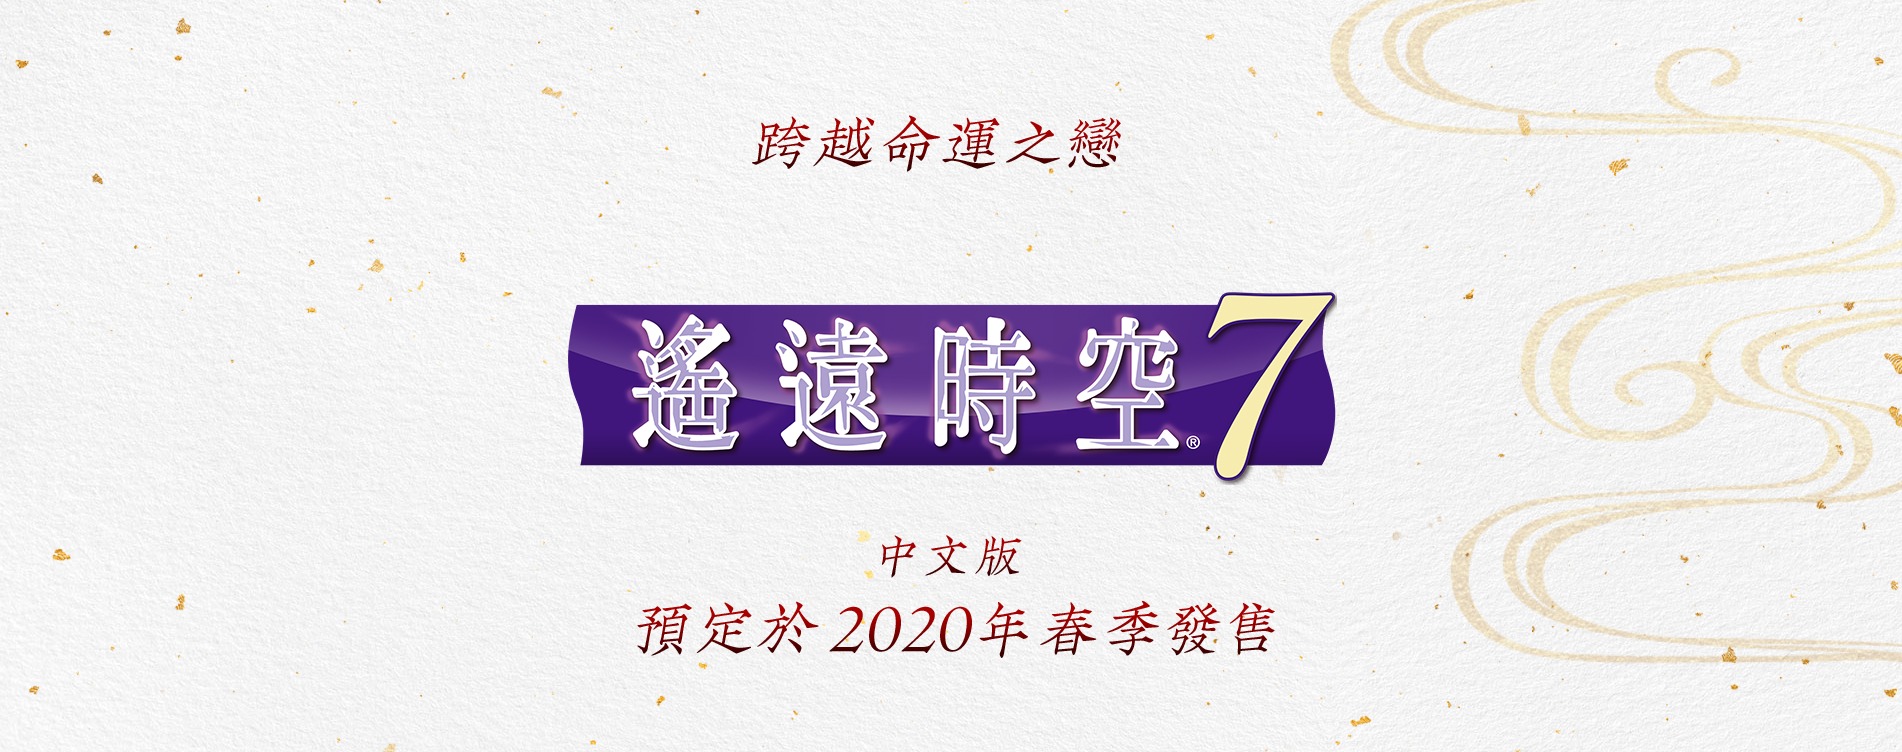 跨越命运之恋 《遥远时空7》确定2020年春季发售支持中文